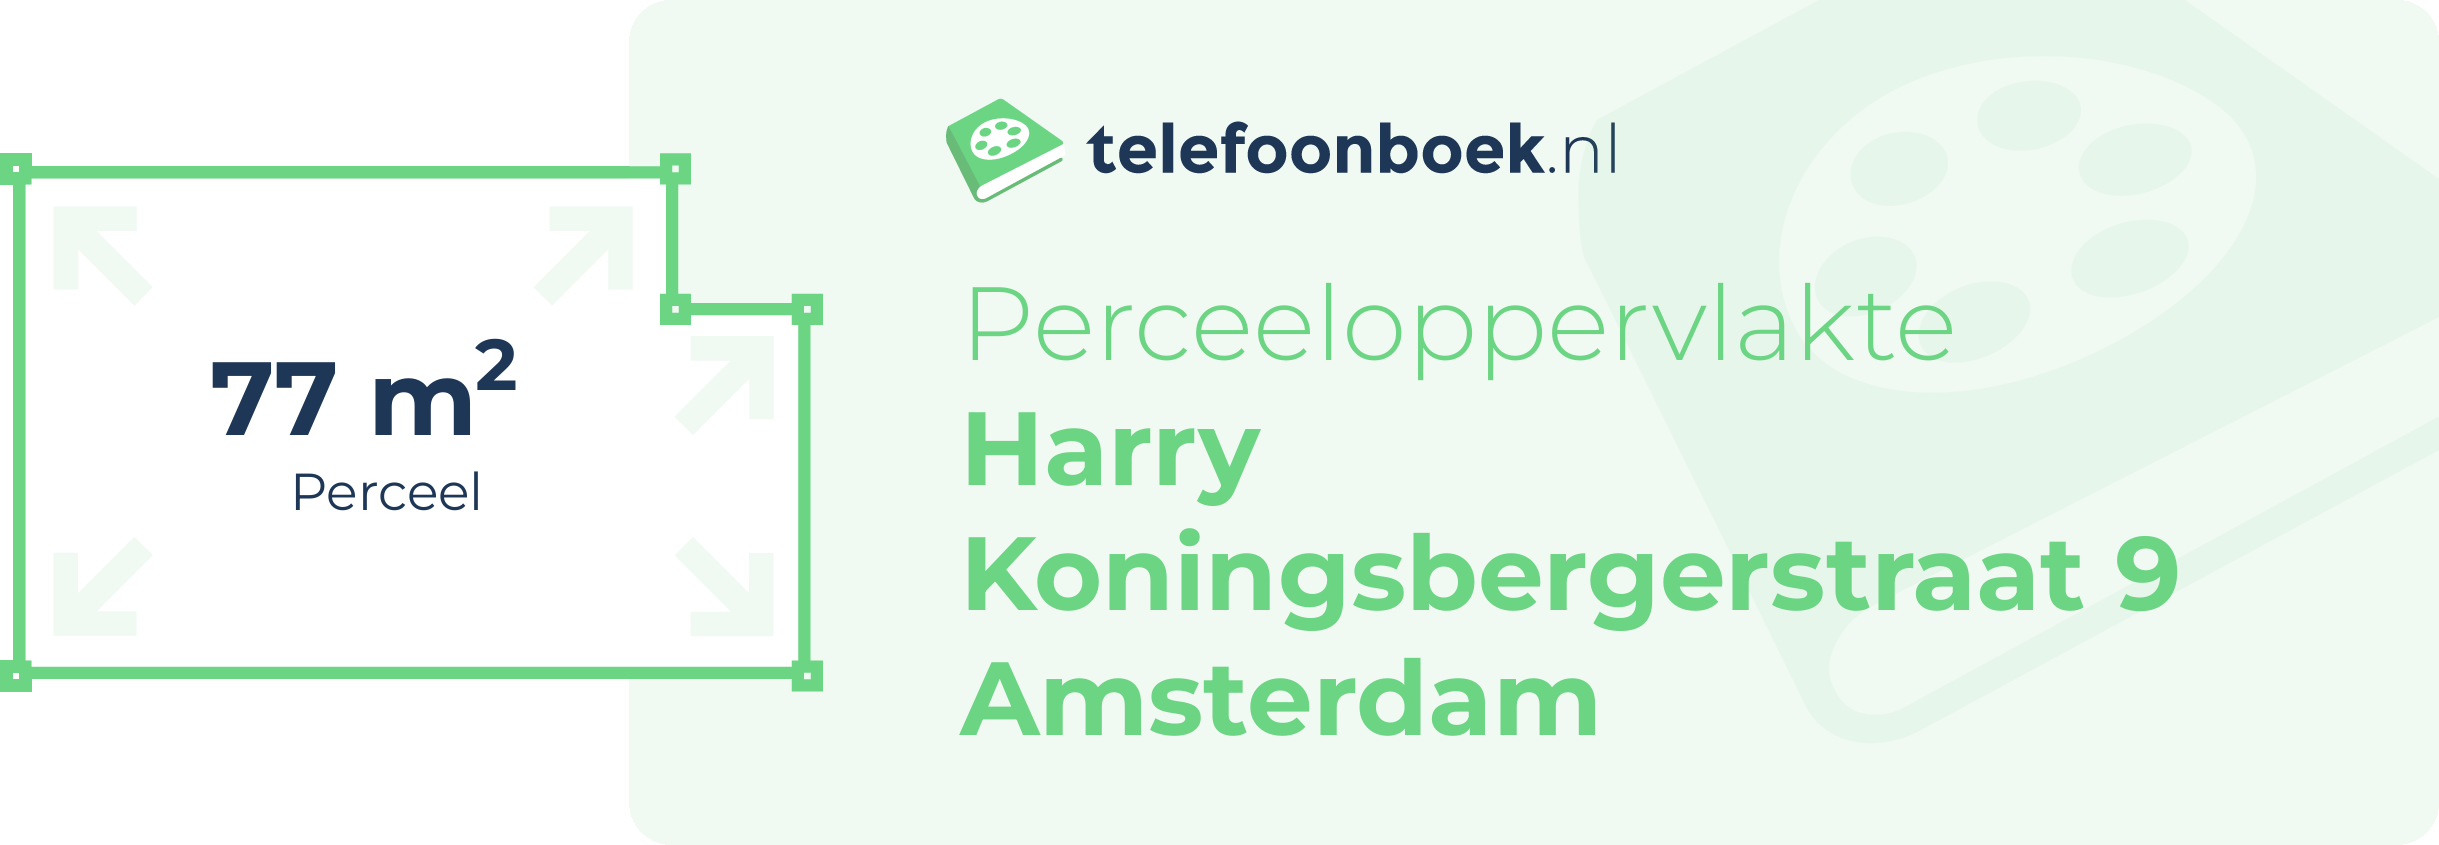 Perceeloppervlakte Harry Koningsbergerstraat 9 Amsterdam